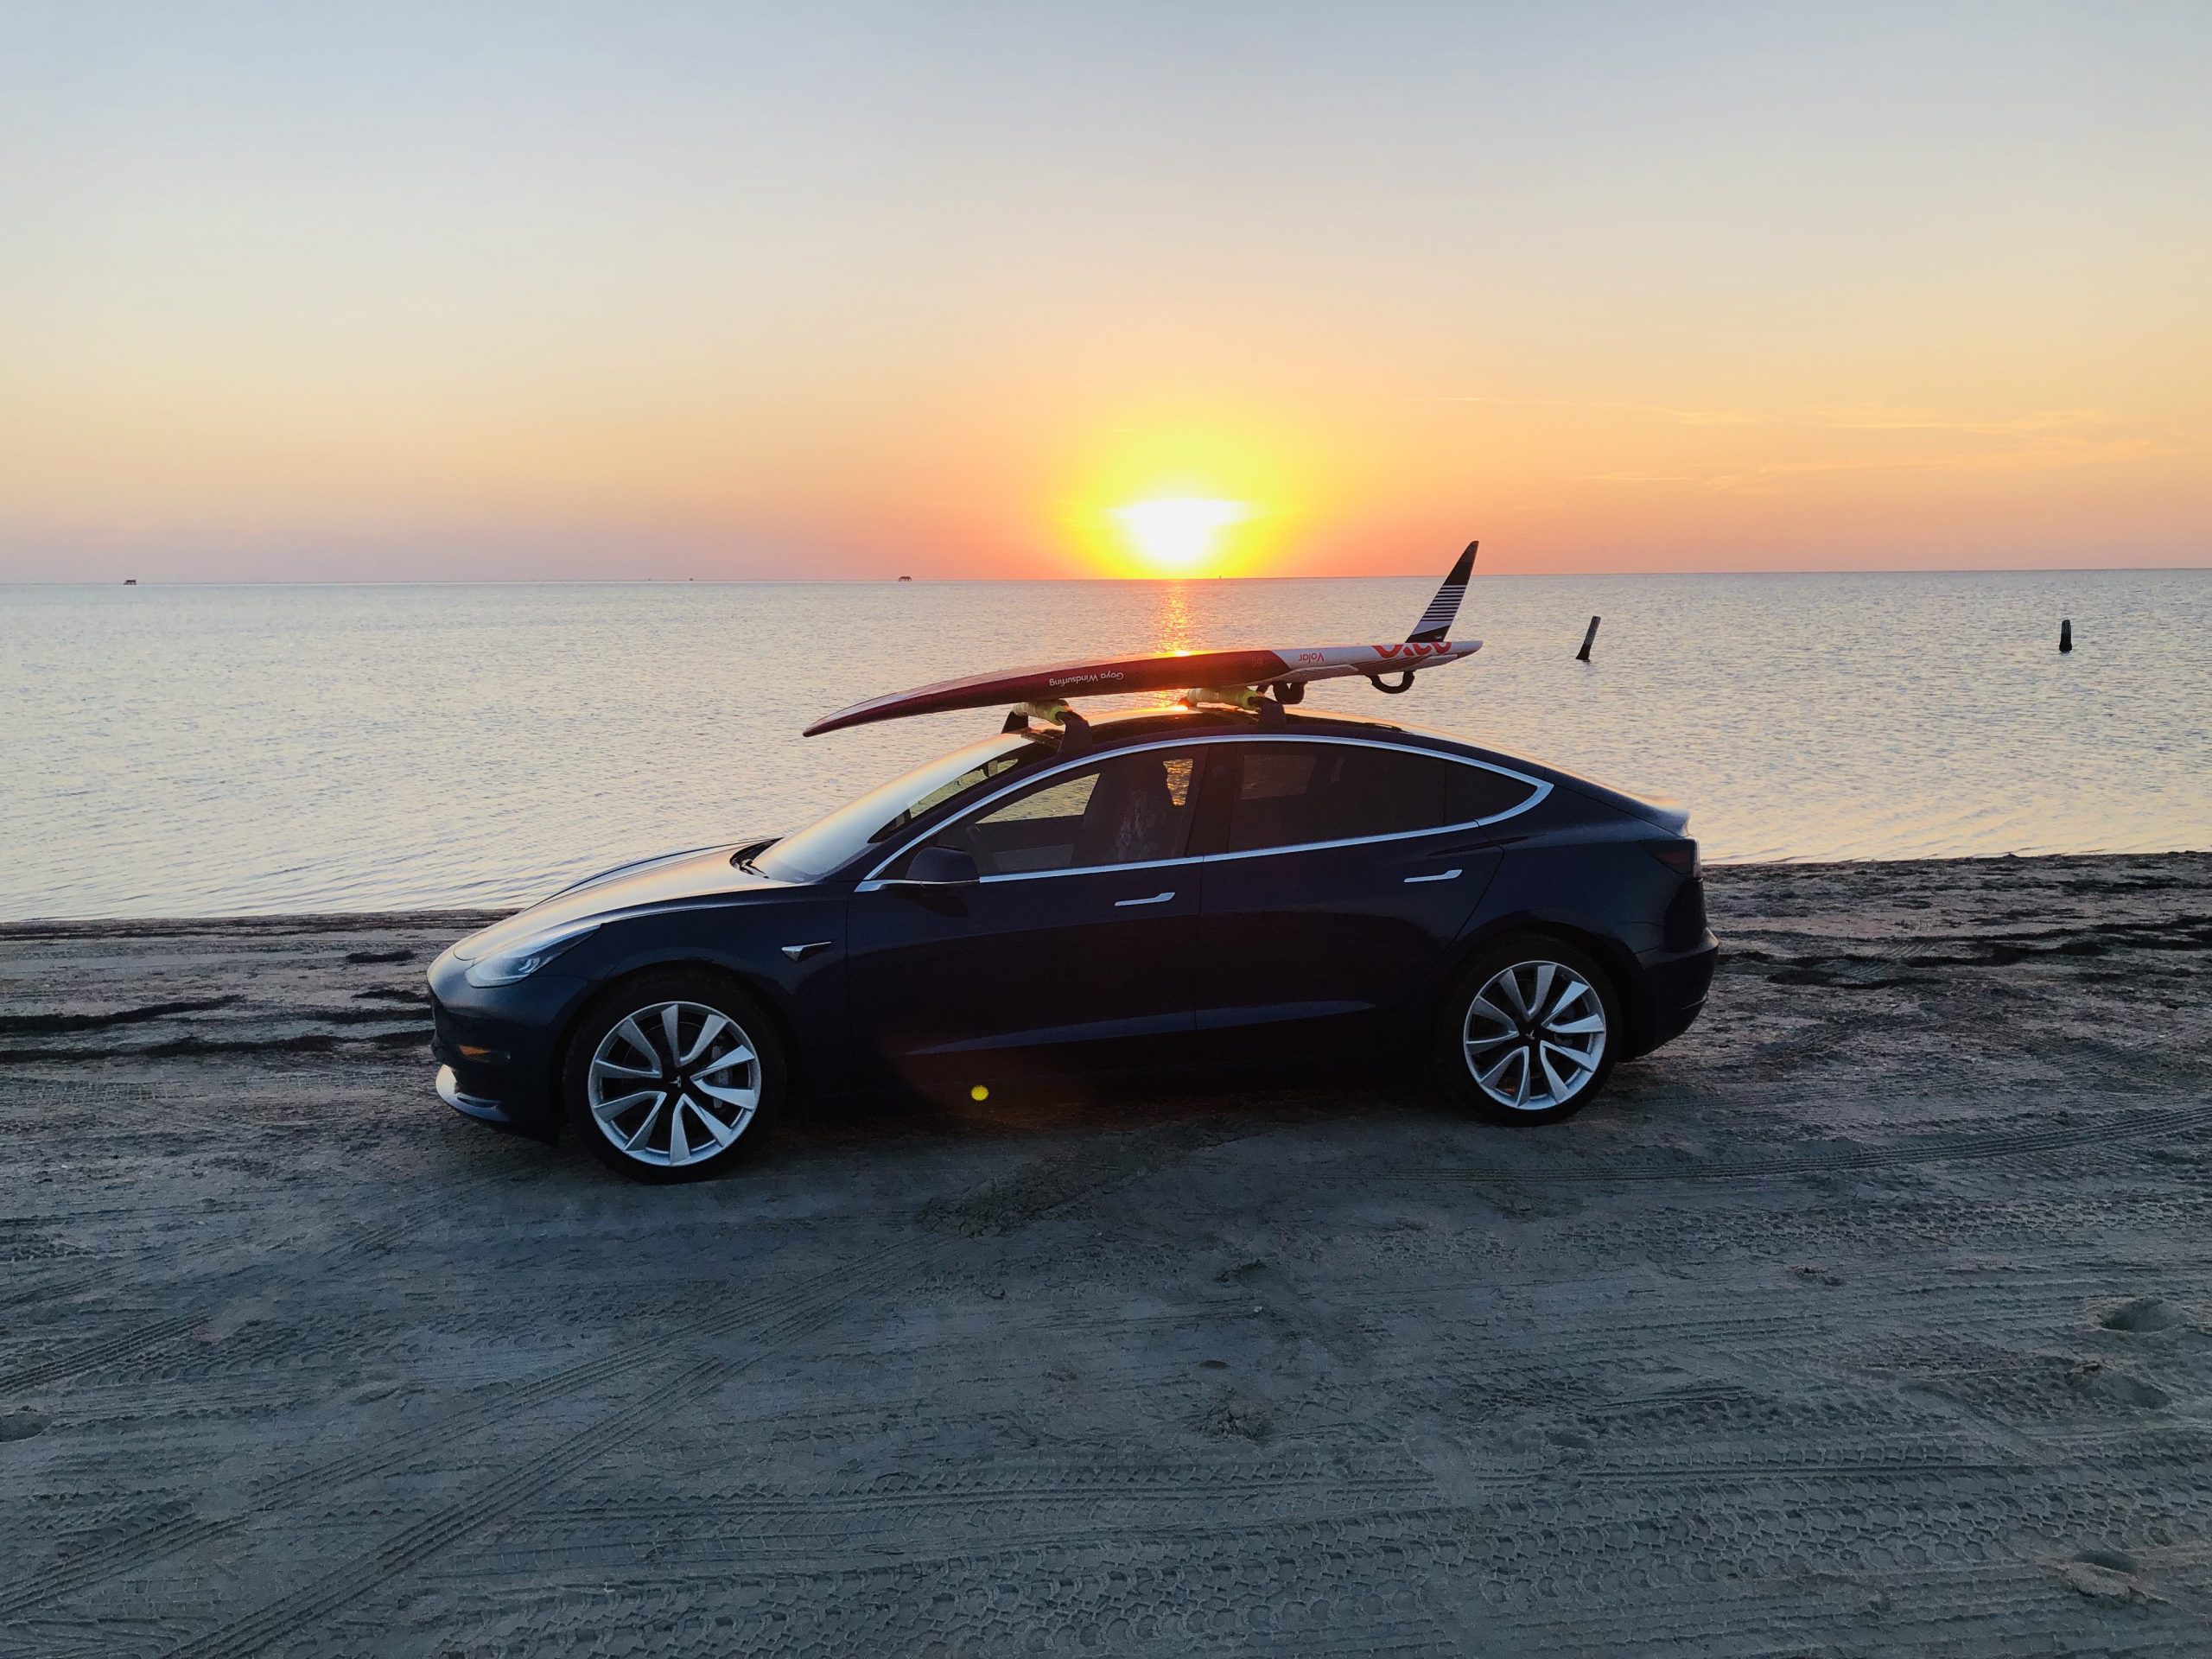 Tesla Model 3 : le bilan après 2 ans d'utilisation et 70 000 km parcourus